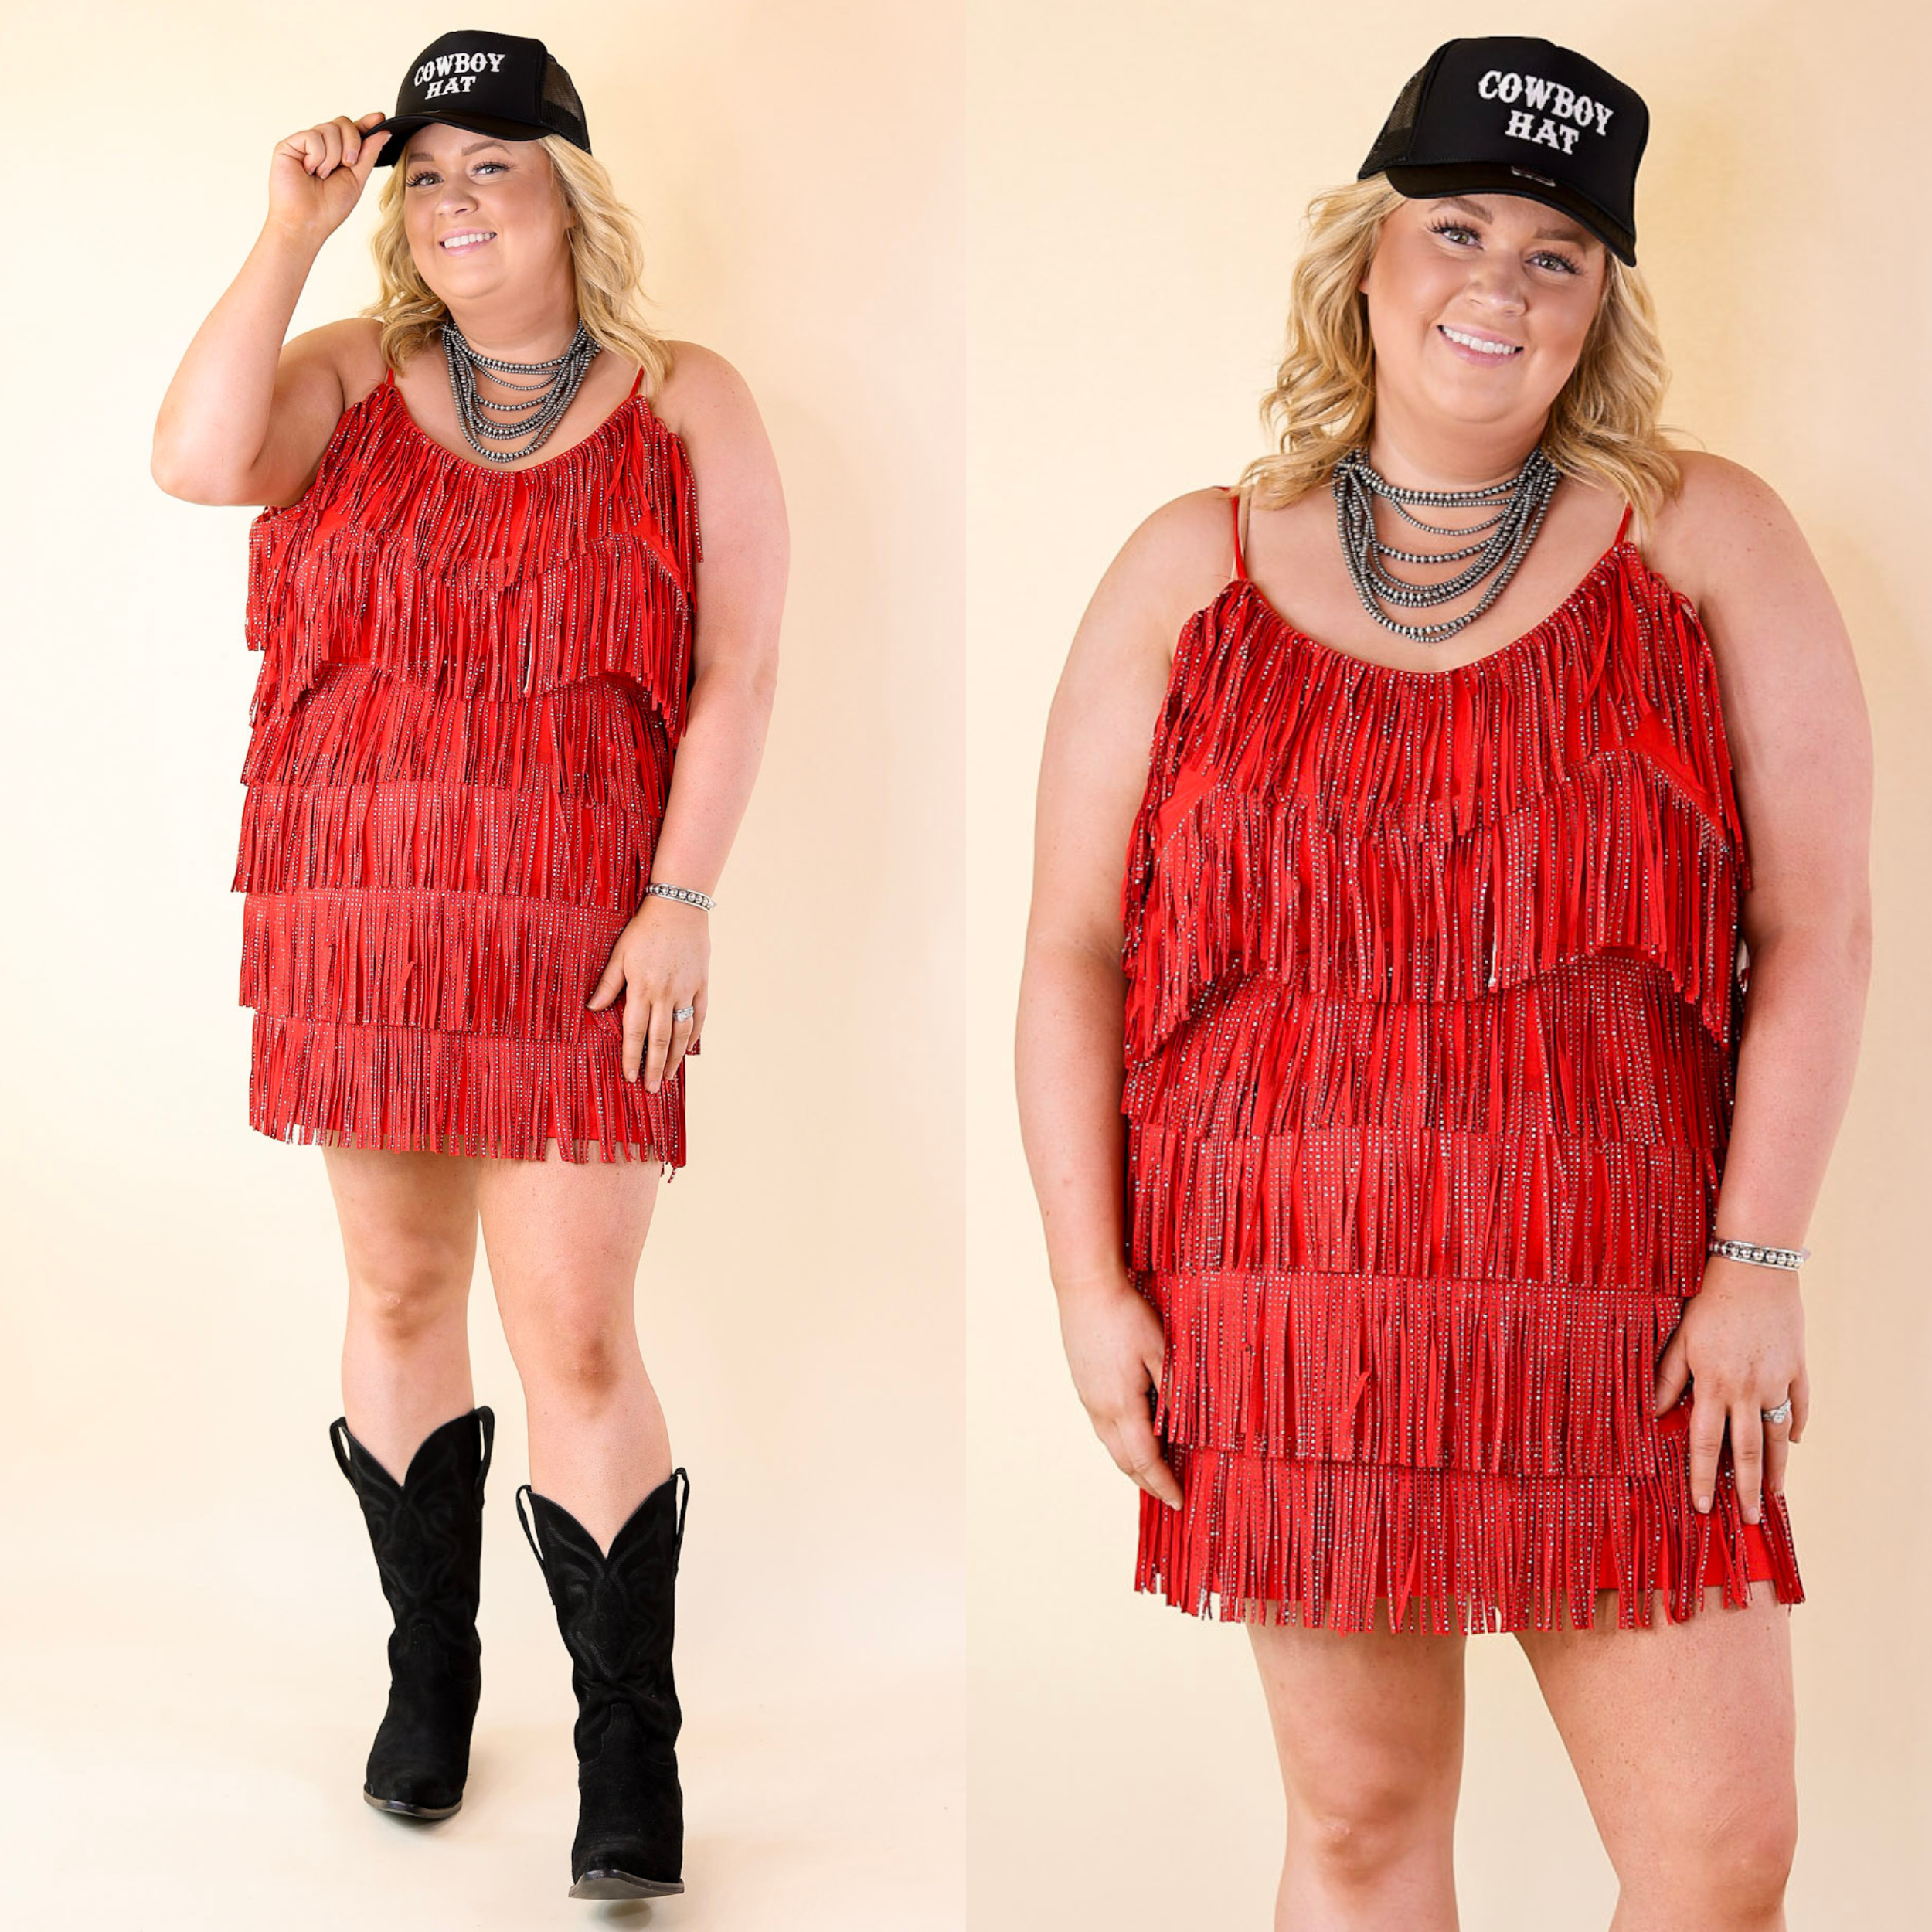 Cowboy Killer Crystal Fringe Dress in Red - Giddy Up Glamour Boutique